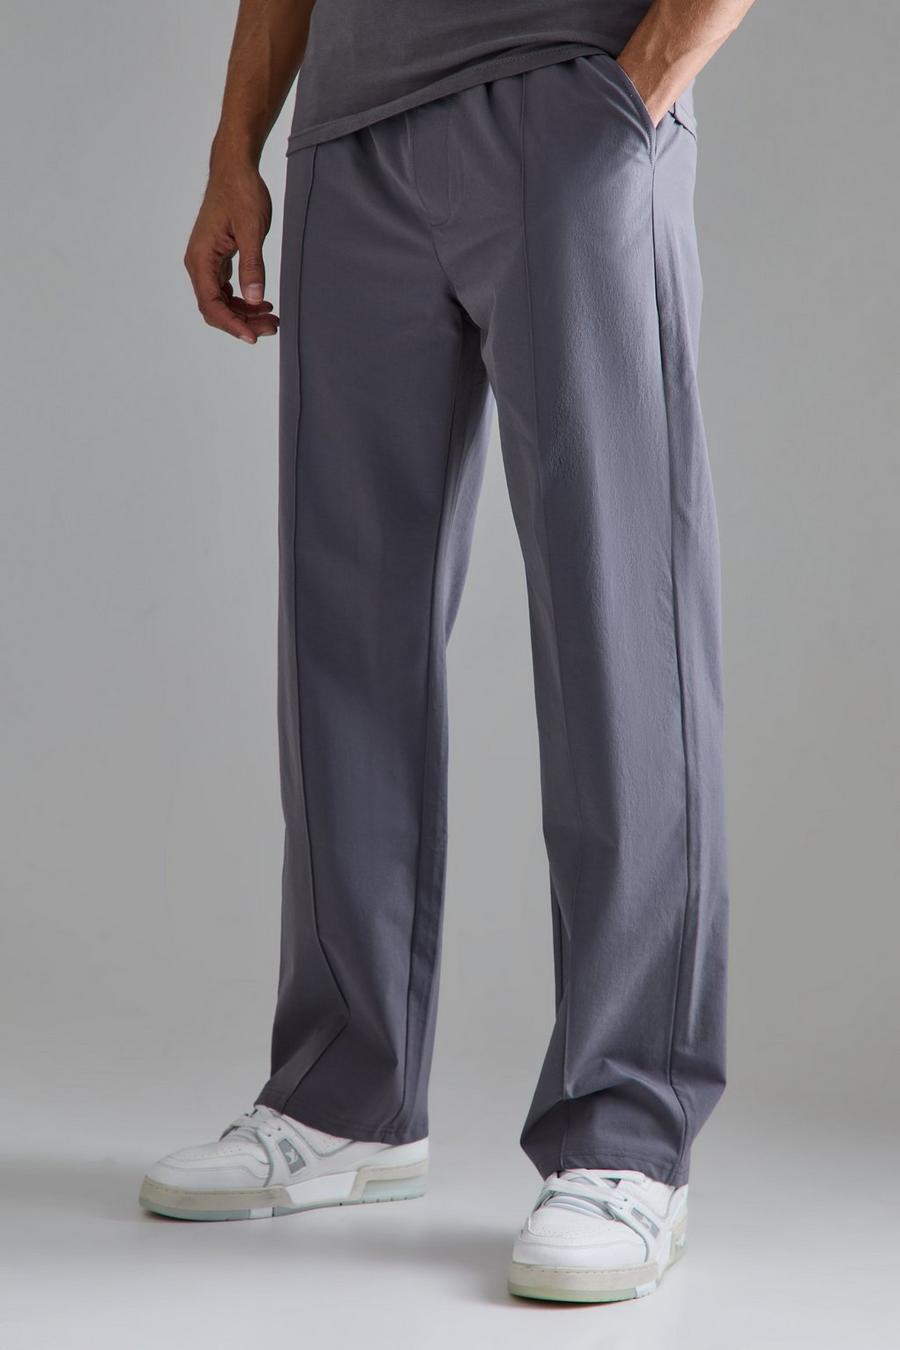 Pantalón técnico elástico ligero holgado con alforza, Charcoal